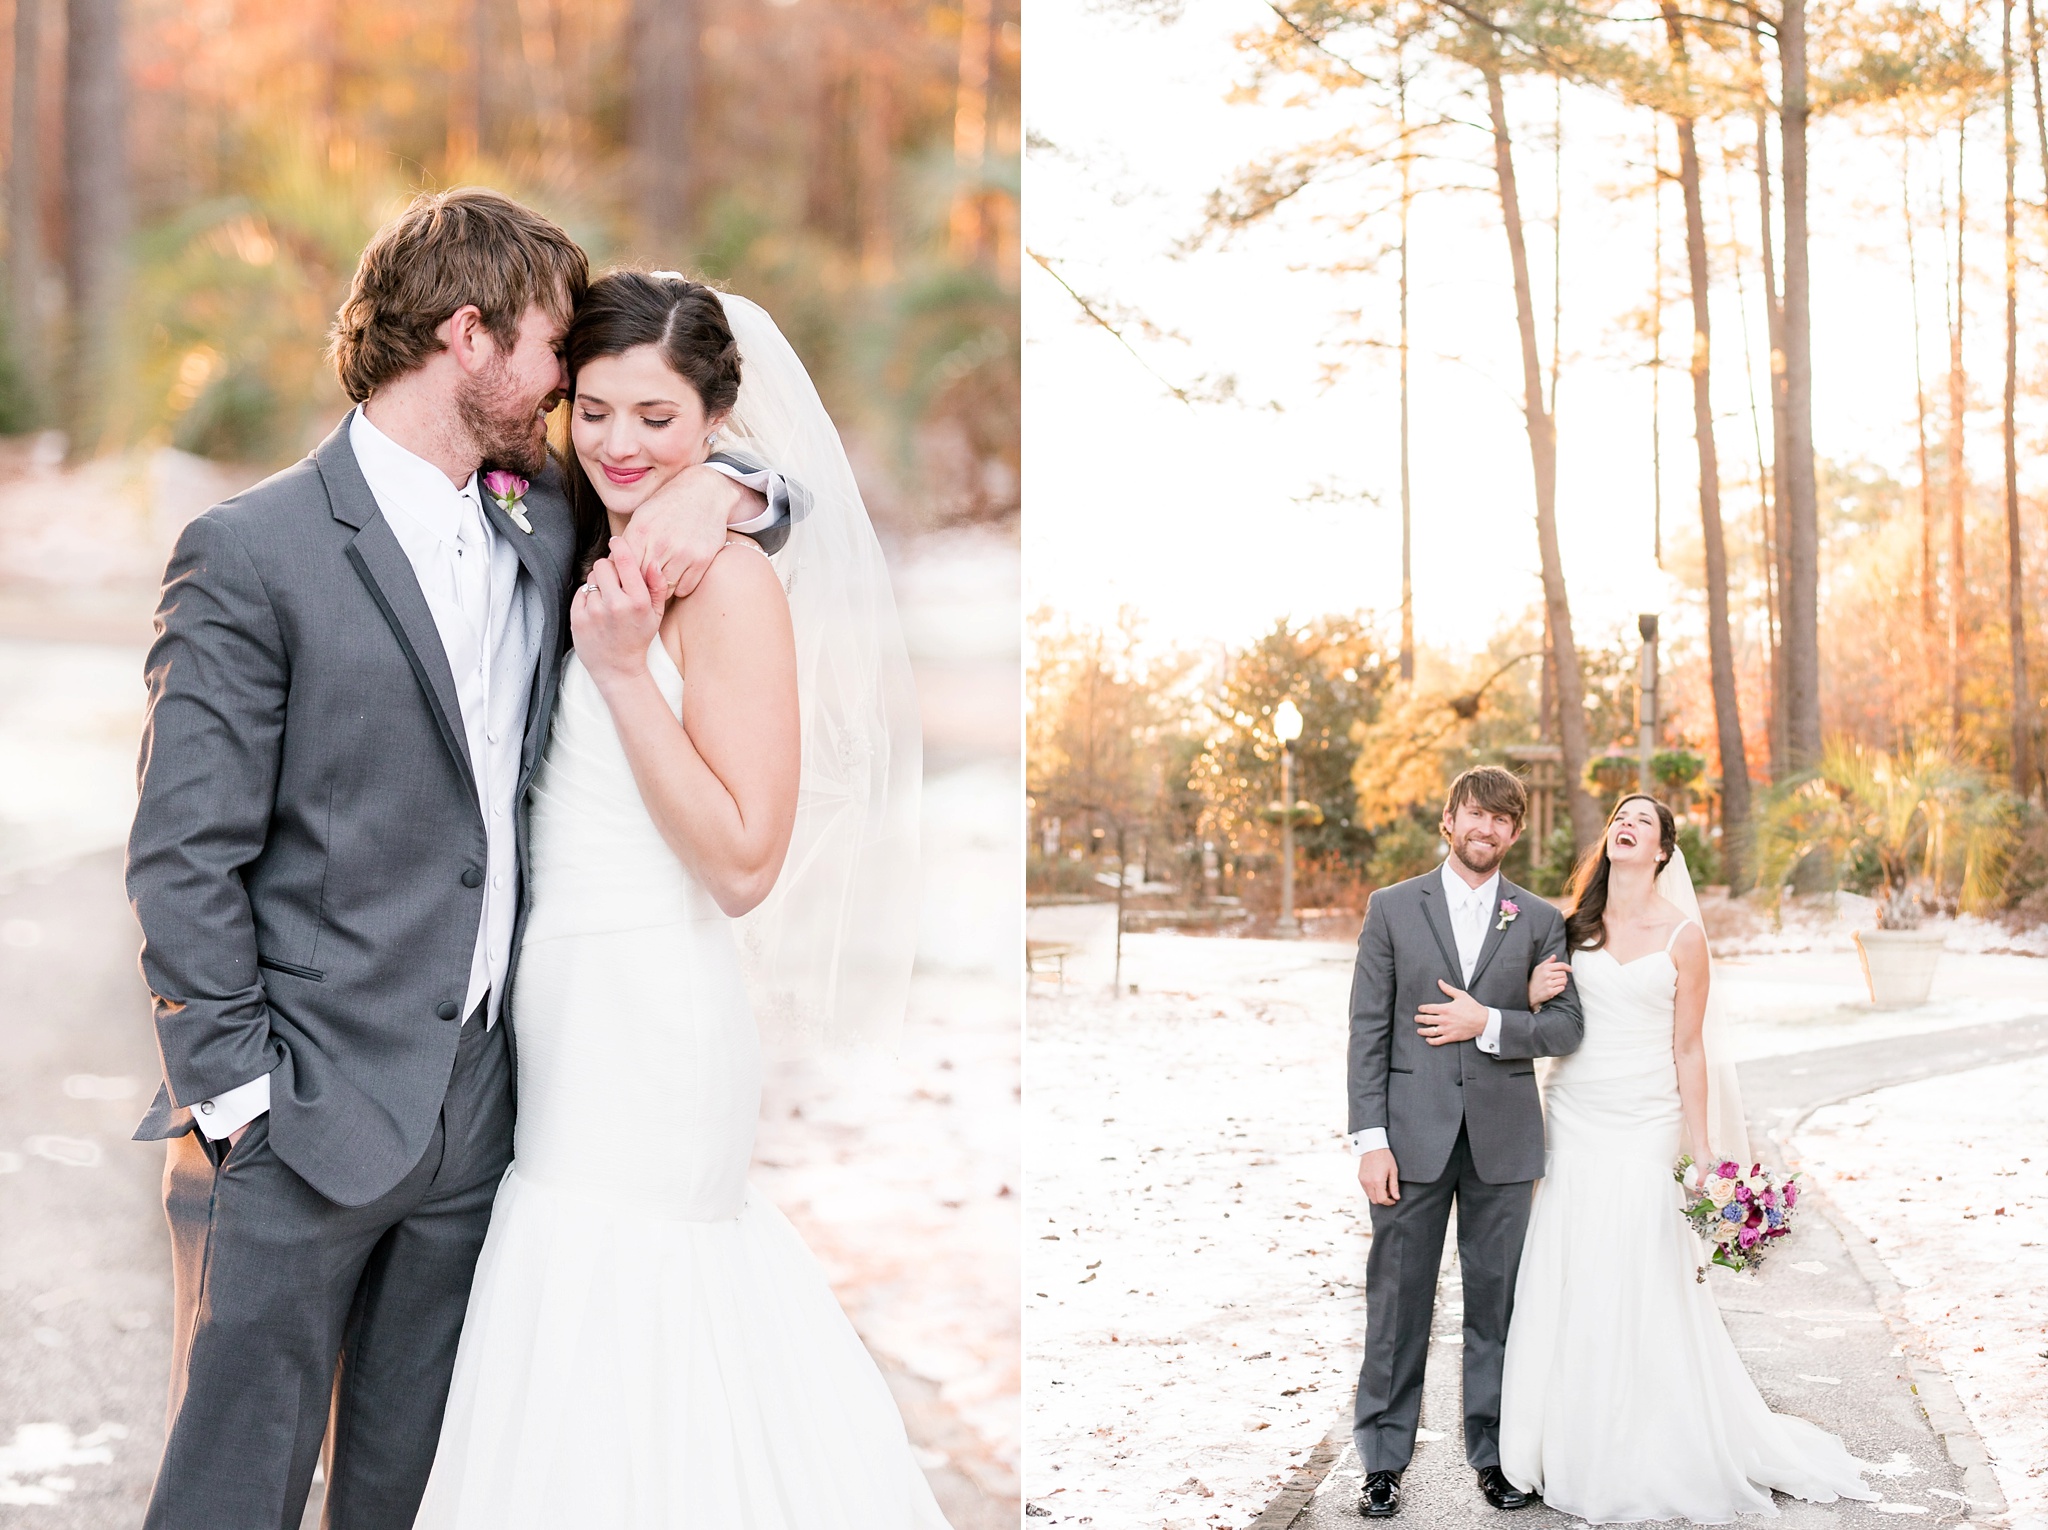 Snowy Winter Aldridge Gardens Wedding | Birmingham Alabama Wedding Photographers_0048.jpg